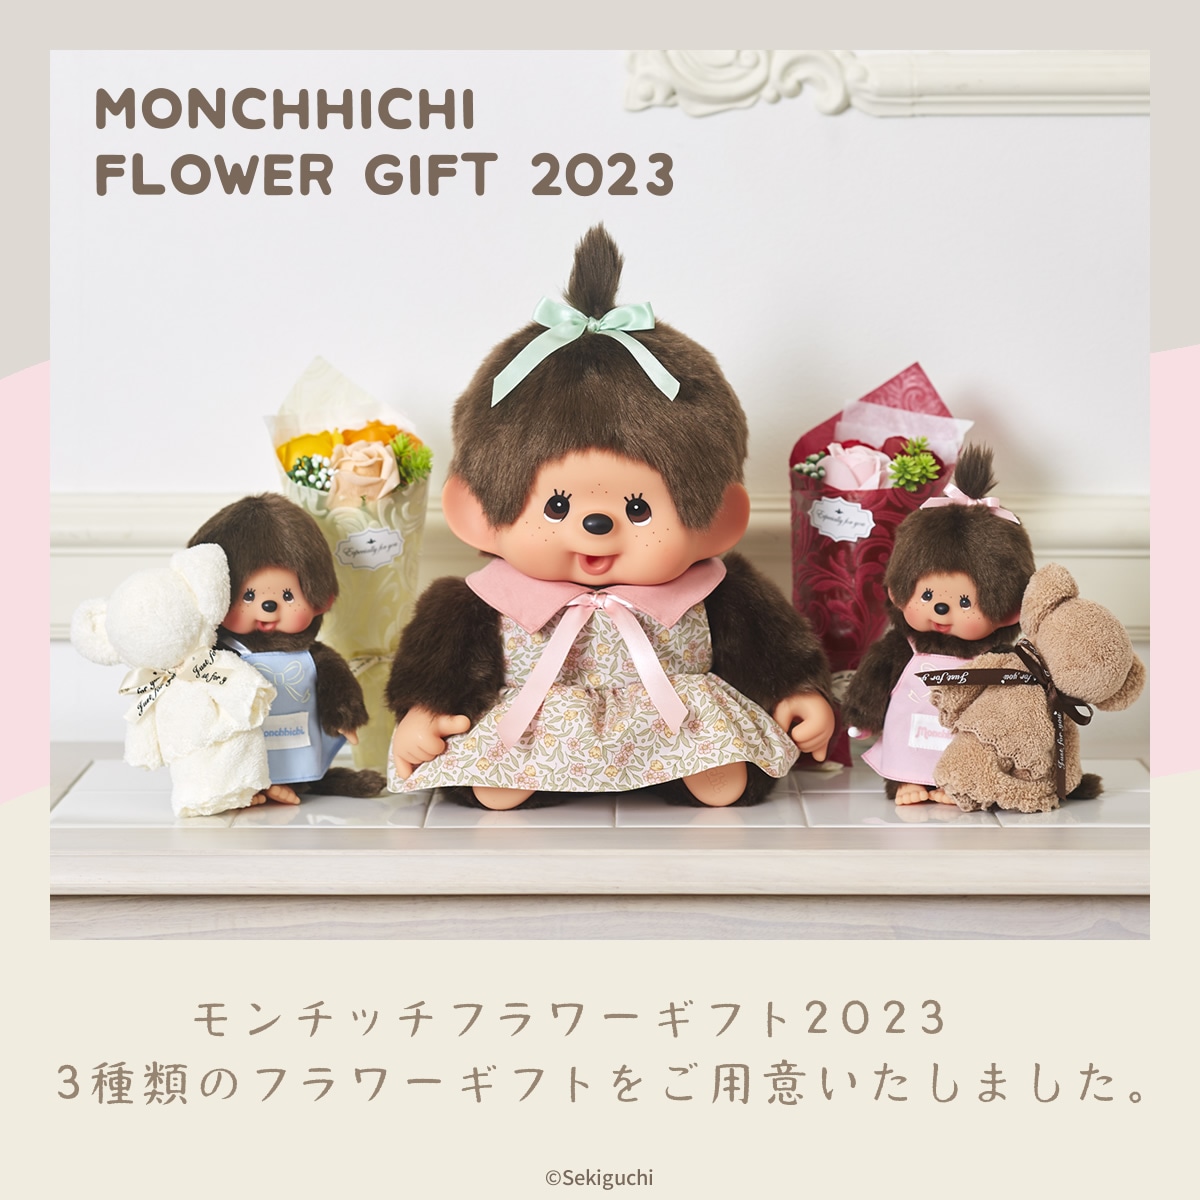 【当店限定】 モンチッチ フラワーギフト 2023